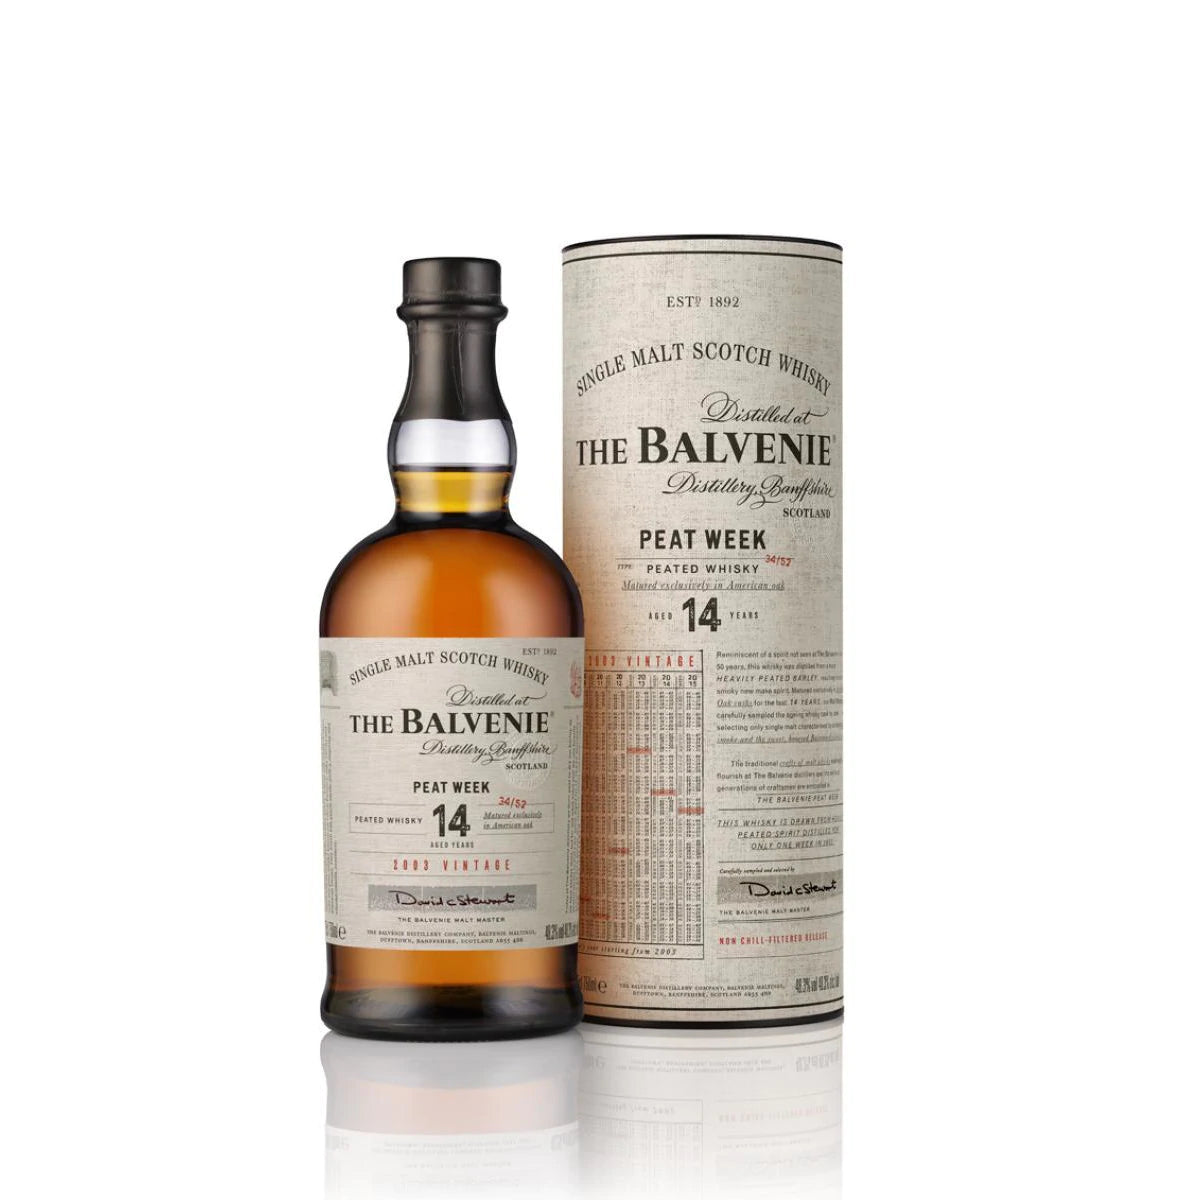 The Balvenie 14 Year Old Peat Week Scotch – Hills Wine & Spirits